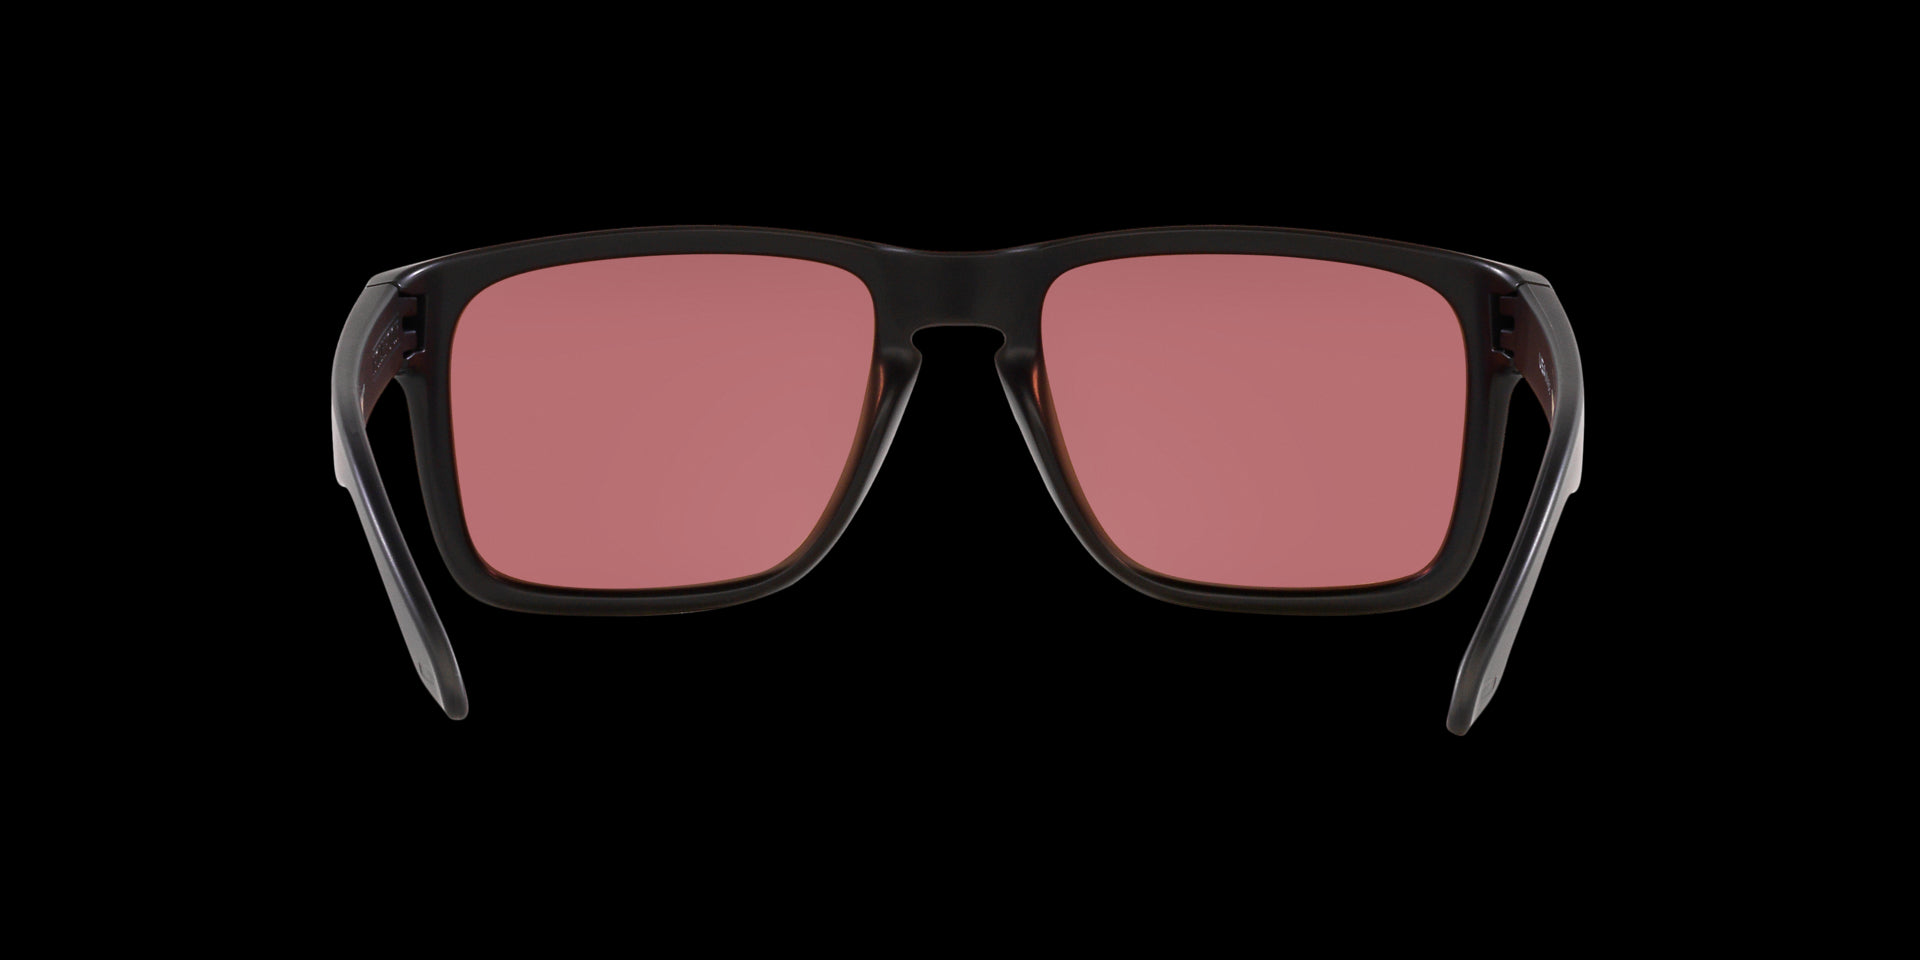 Matte balck/red Holbrook sunglasses